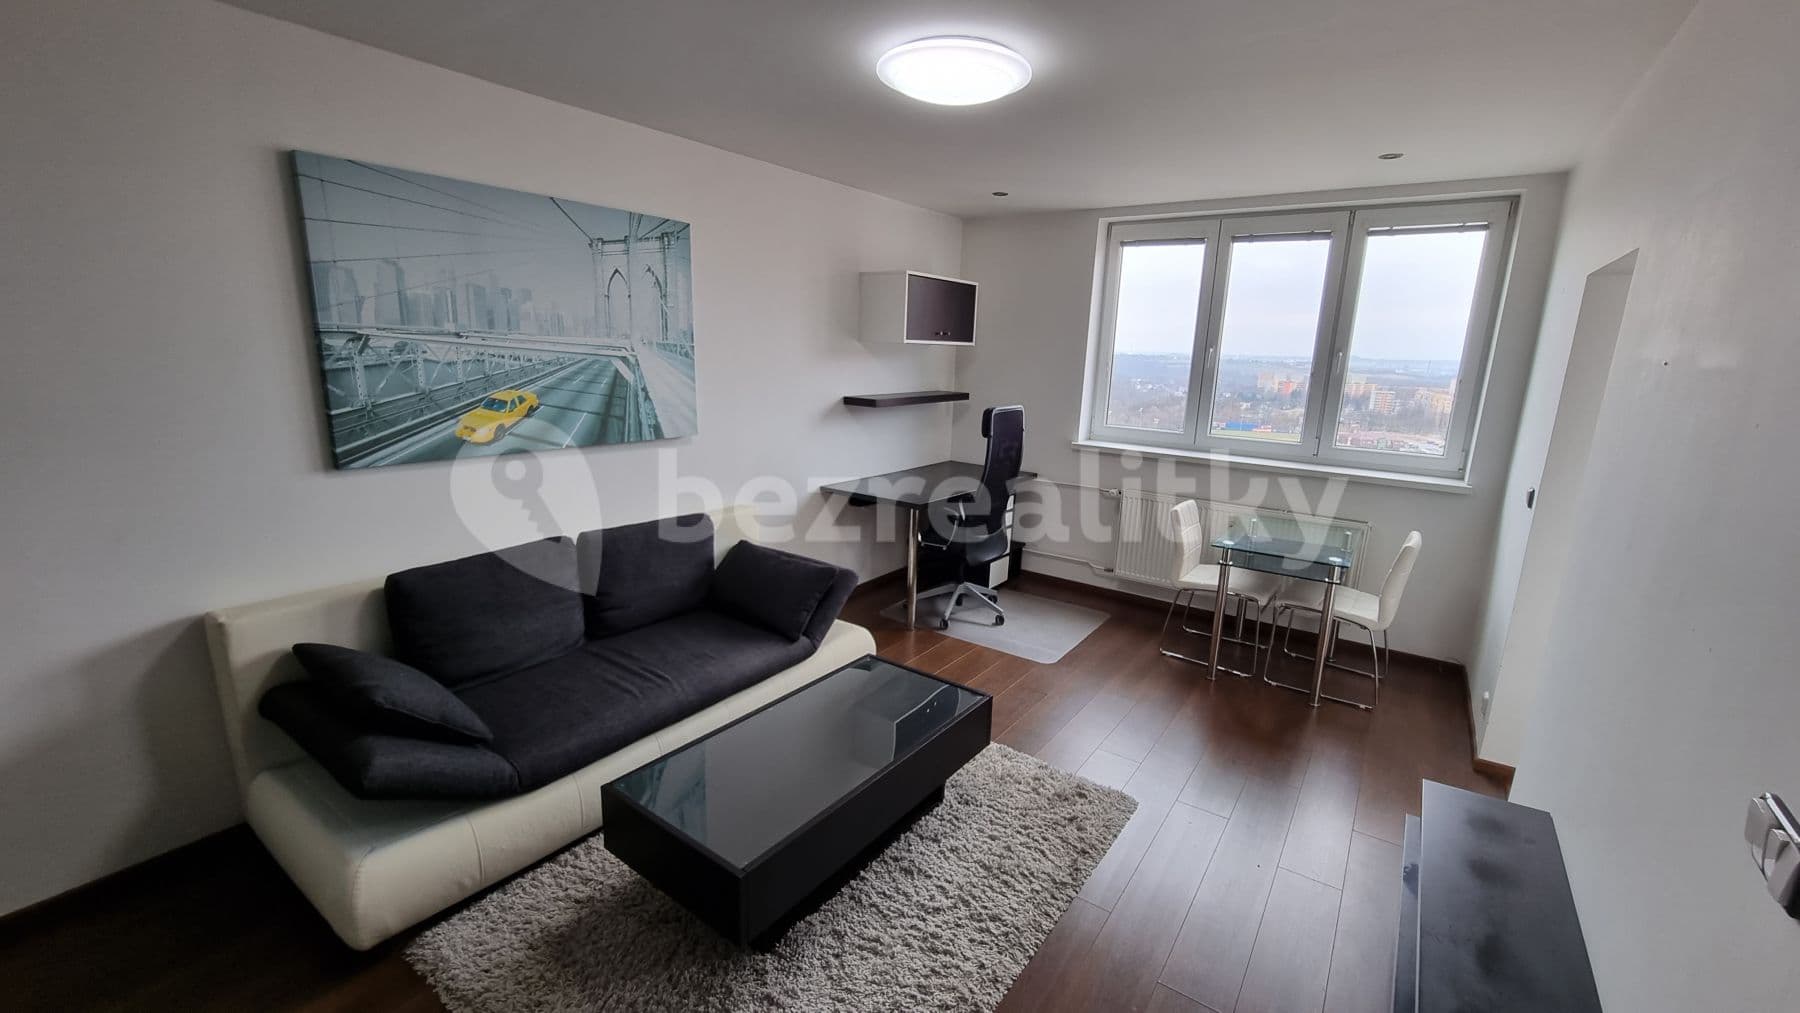 2 bedroom flat to rent, 52 m², Oty Synka, Ostrava, Moravskoslezský Region